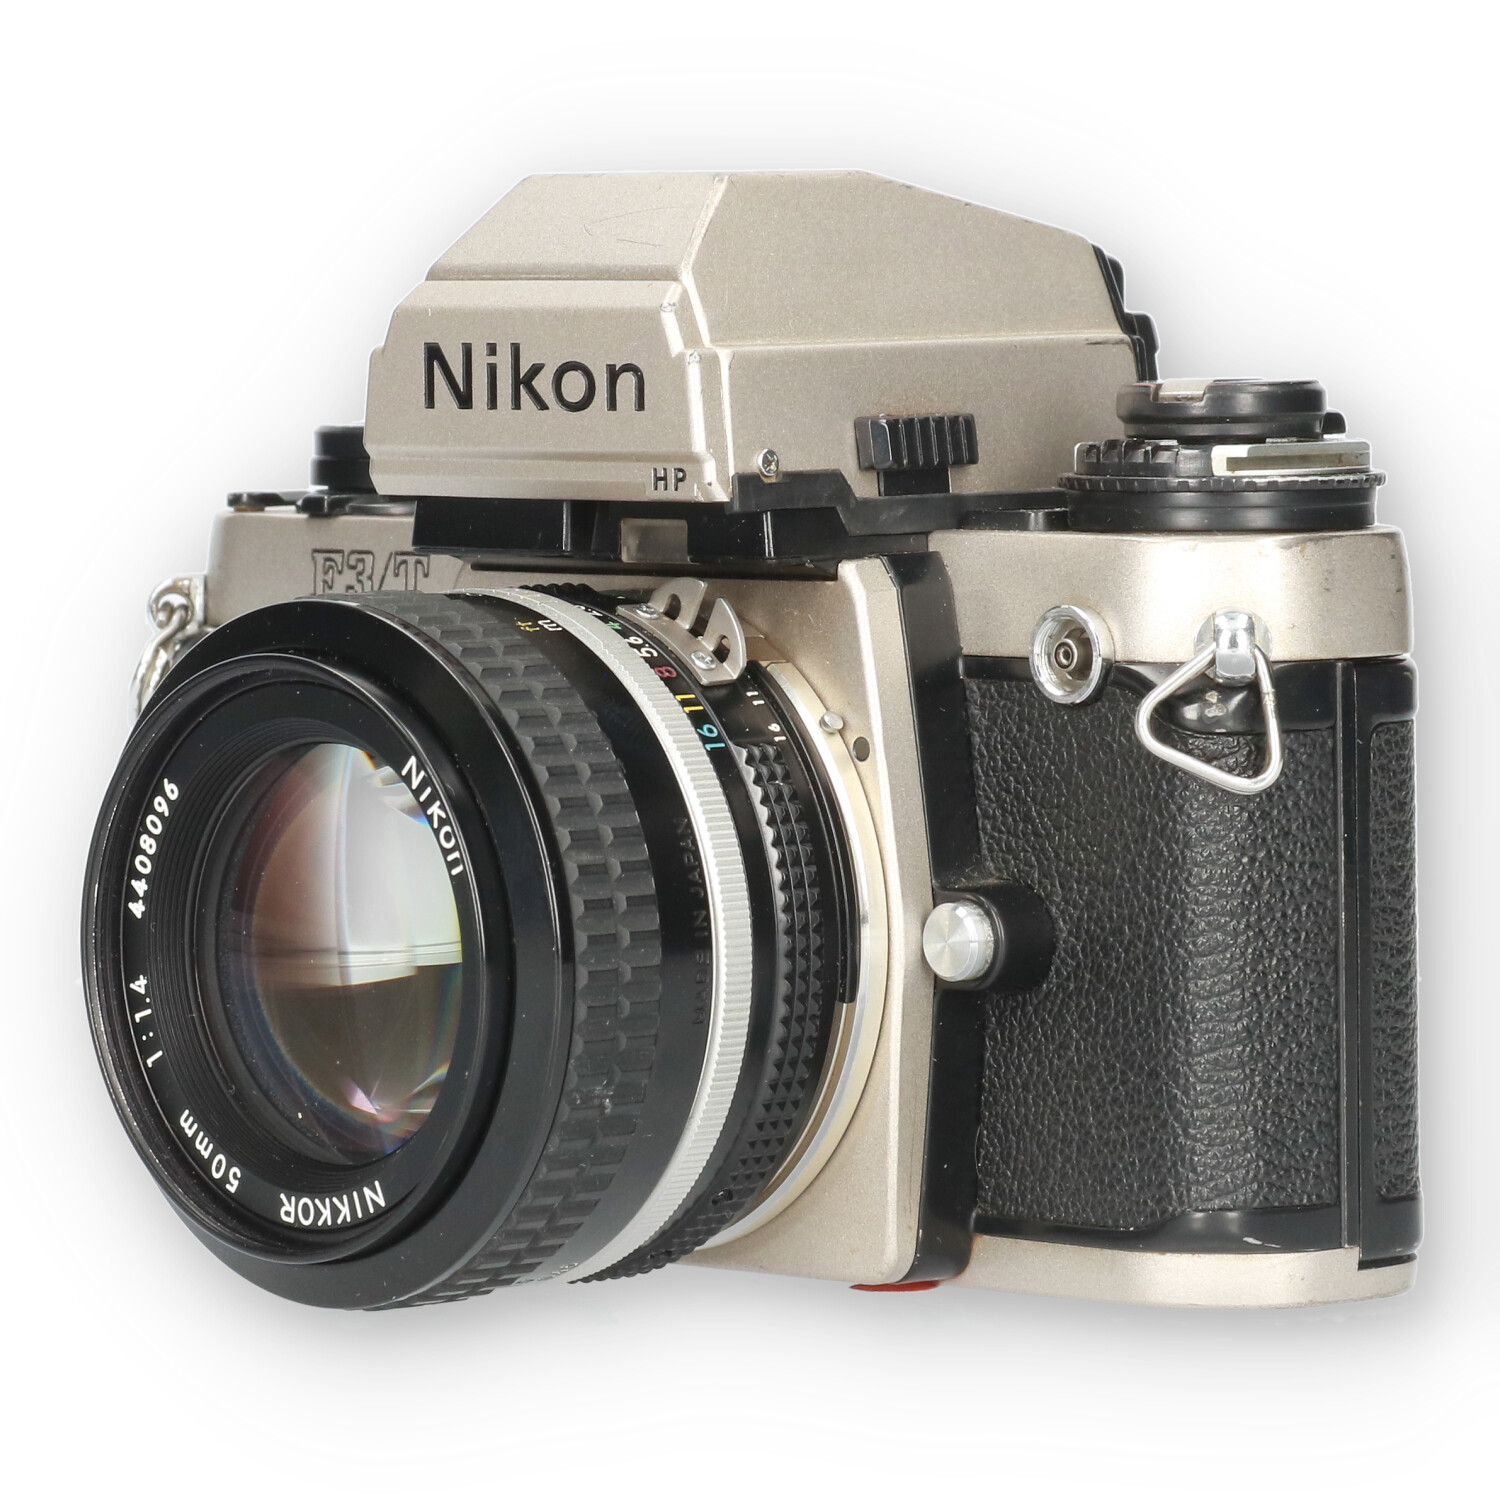 Nikon F3T HP + Ai 50mm f/1.4 - No-Digital